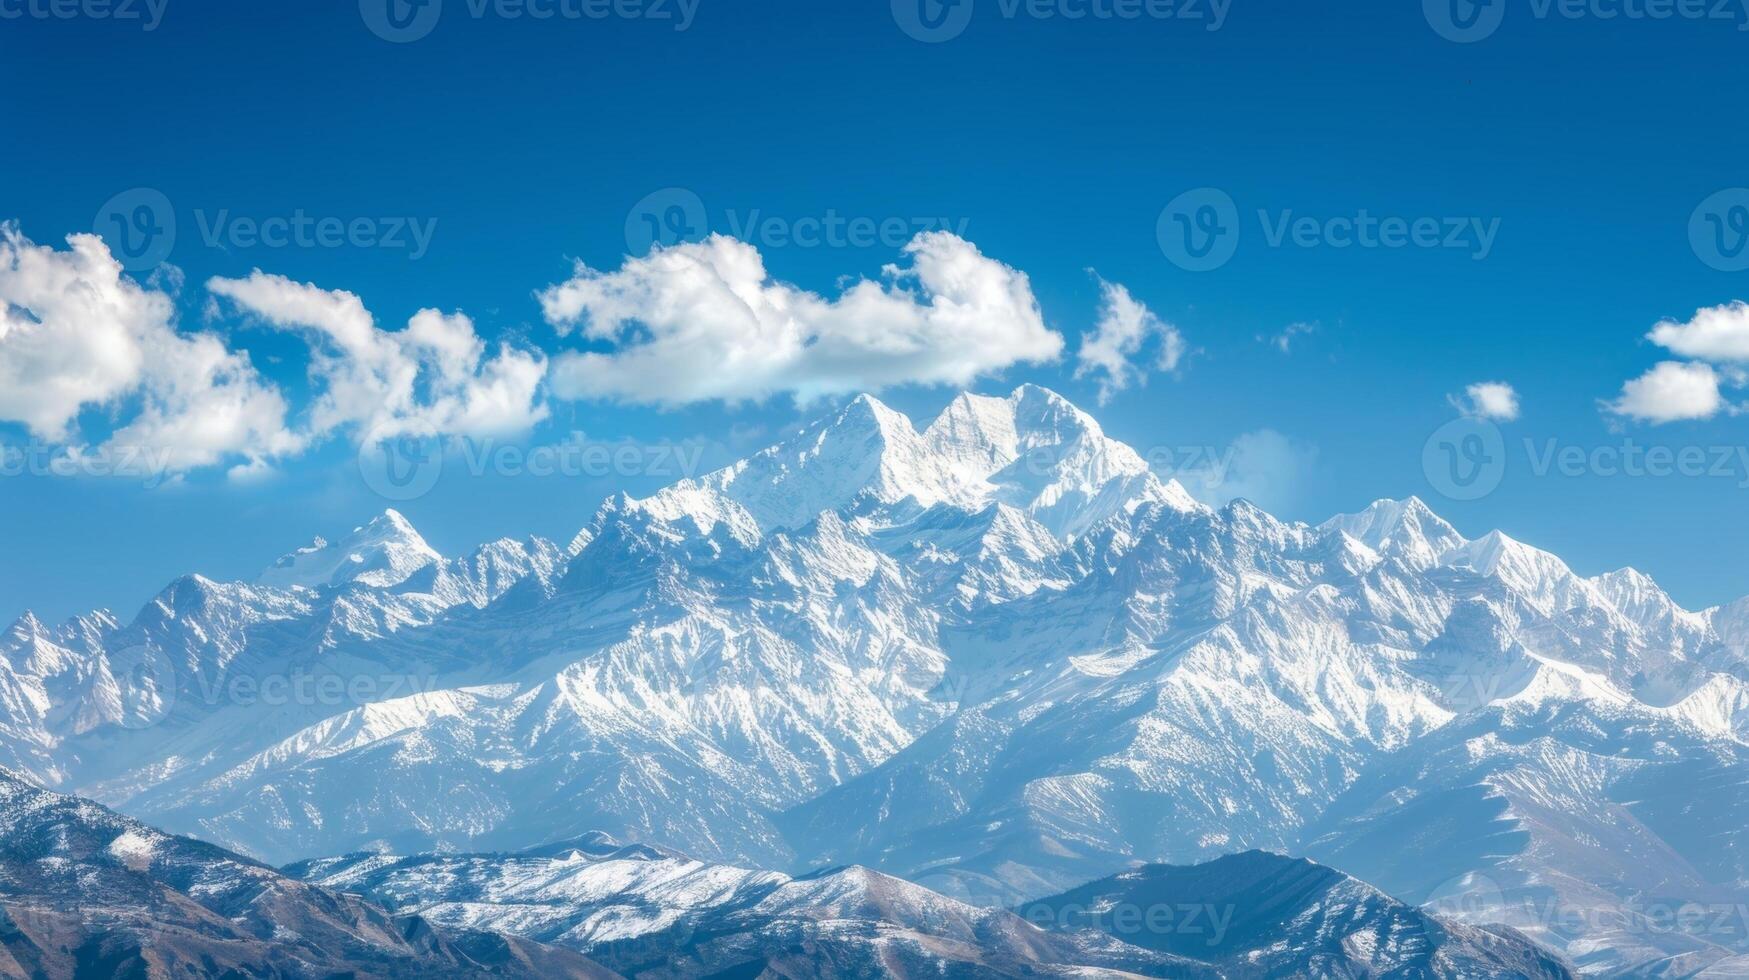 uma tranquilo cena do uma montanha alcance com coberto de neve picos e cristal Claro azul céu ser usava Como a focal ponto para de alguém guiado imagens meditação foto